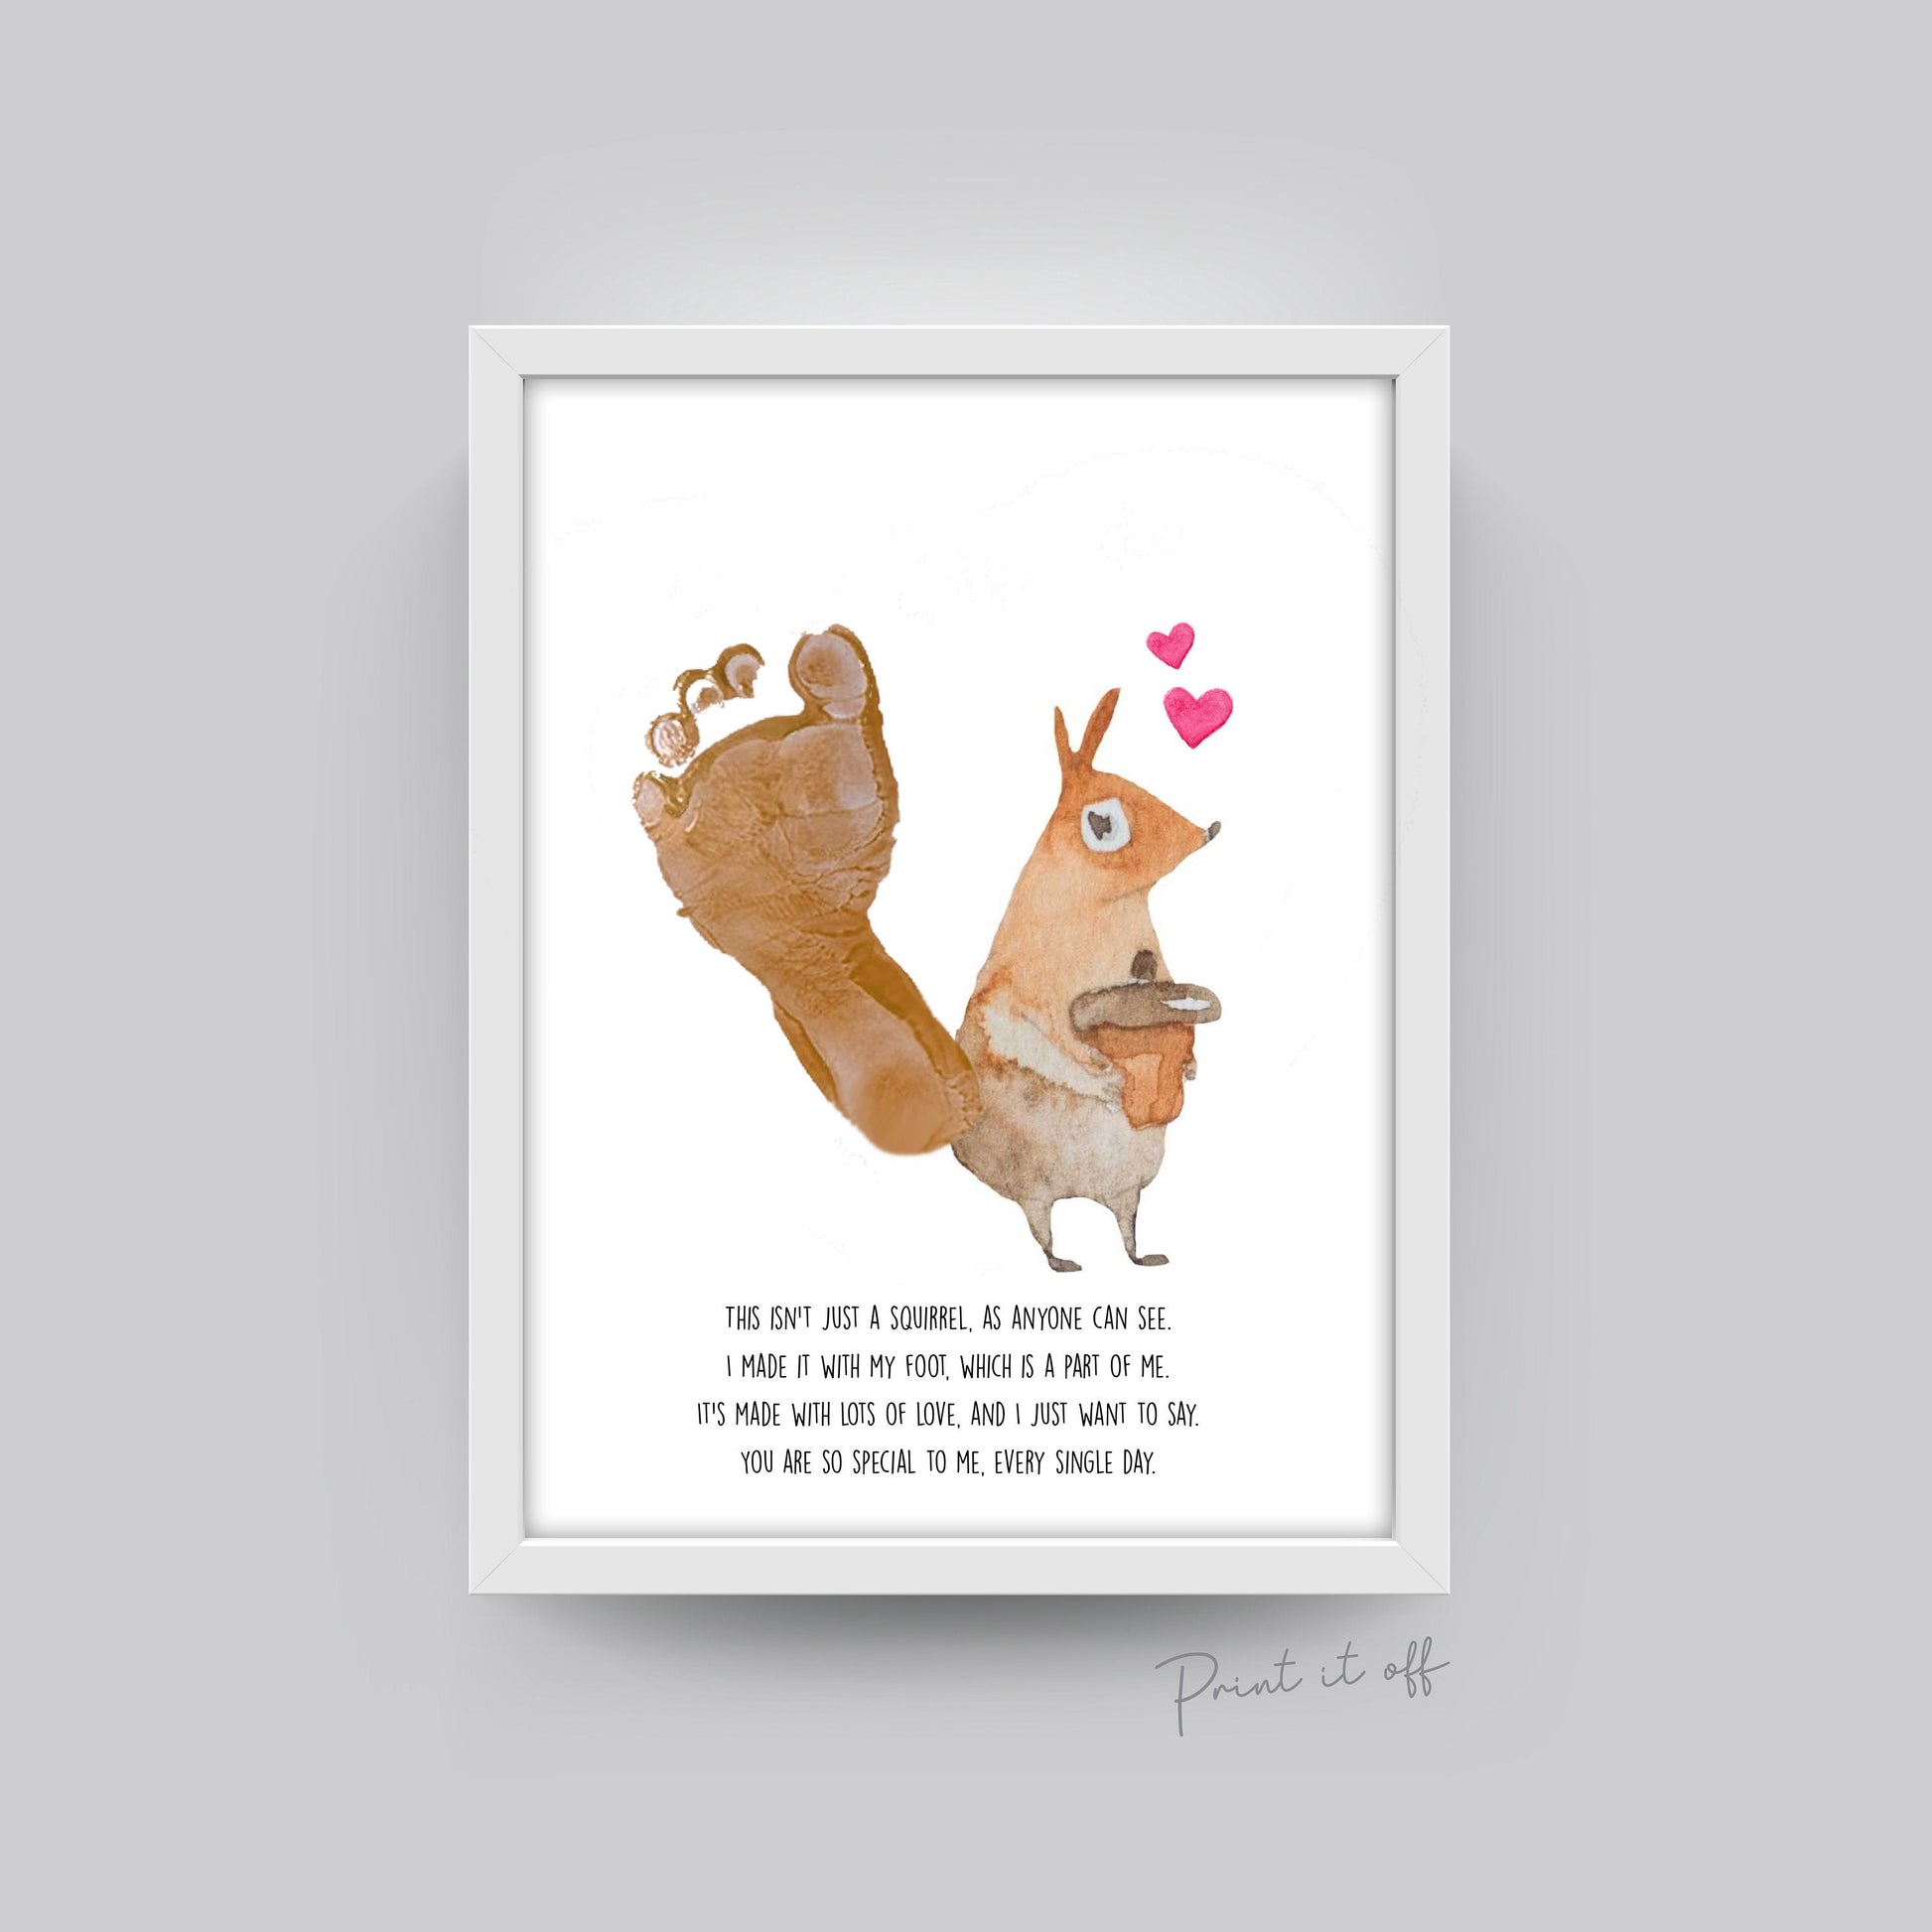 Squirrel Footprint Art Poem / Autumn Thanksgiving / Child Kids Baby Toddler Foot / DIY Memory Keepsake Craft Art / Print Gift Card 0286